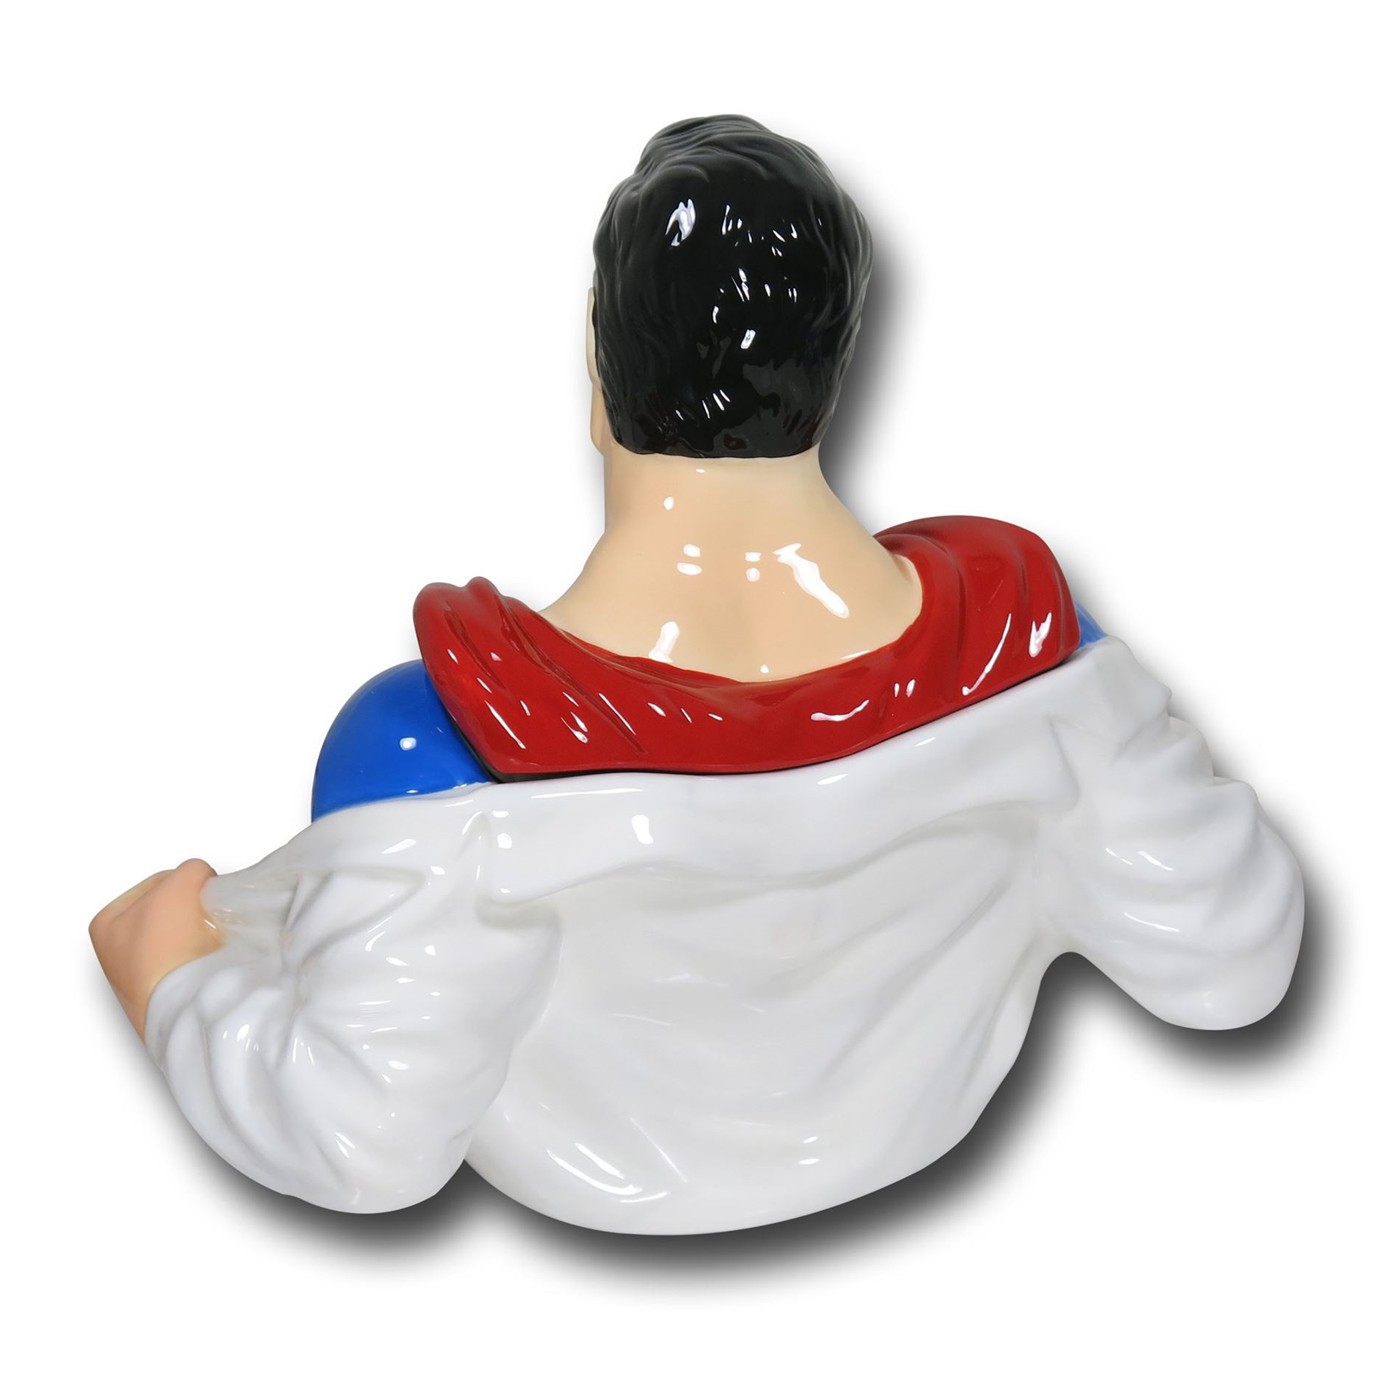 Superman Bust Cookie Jar